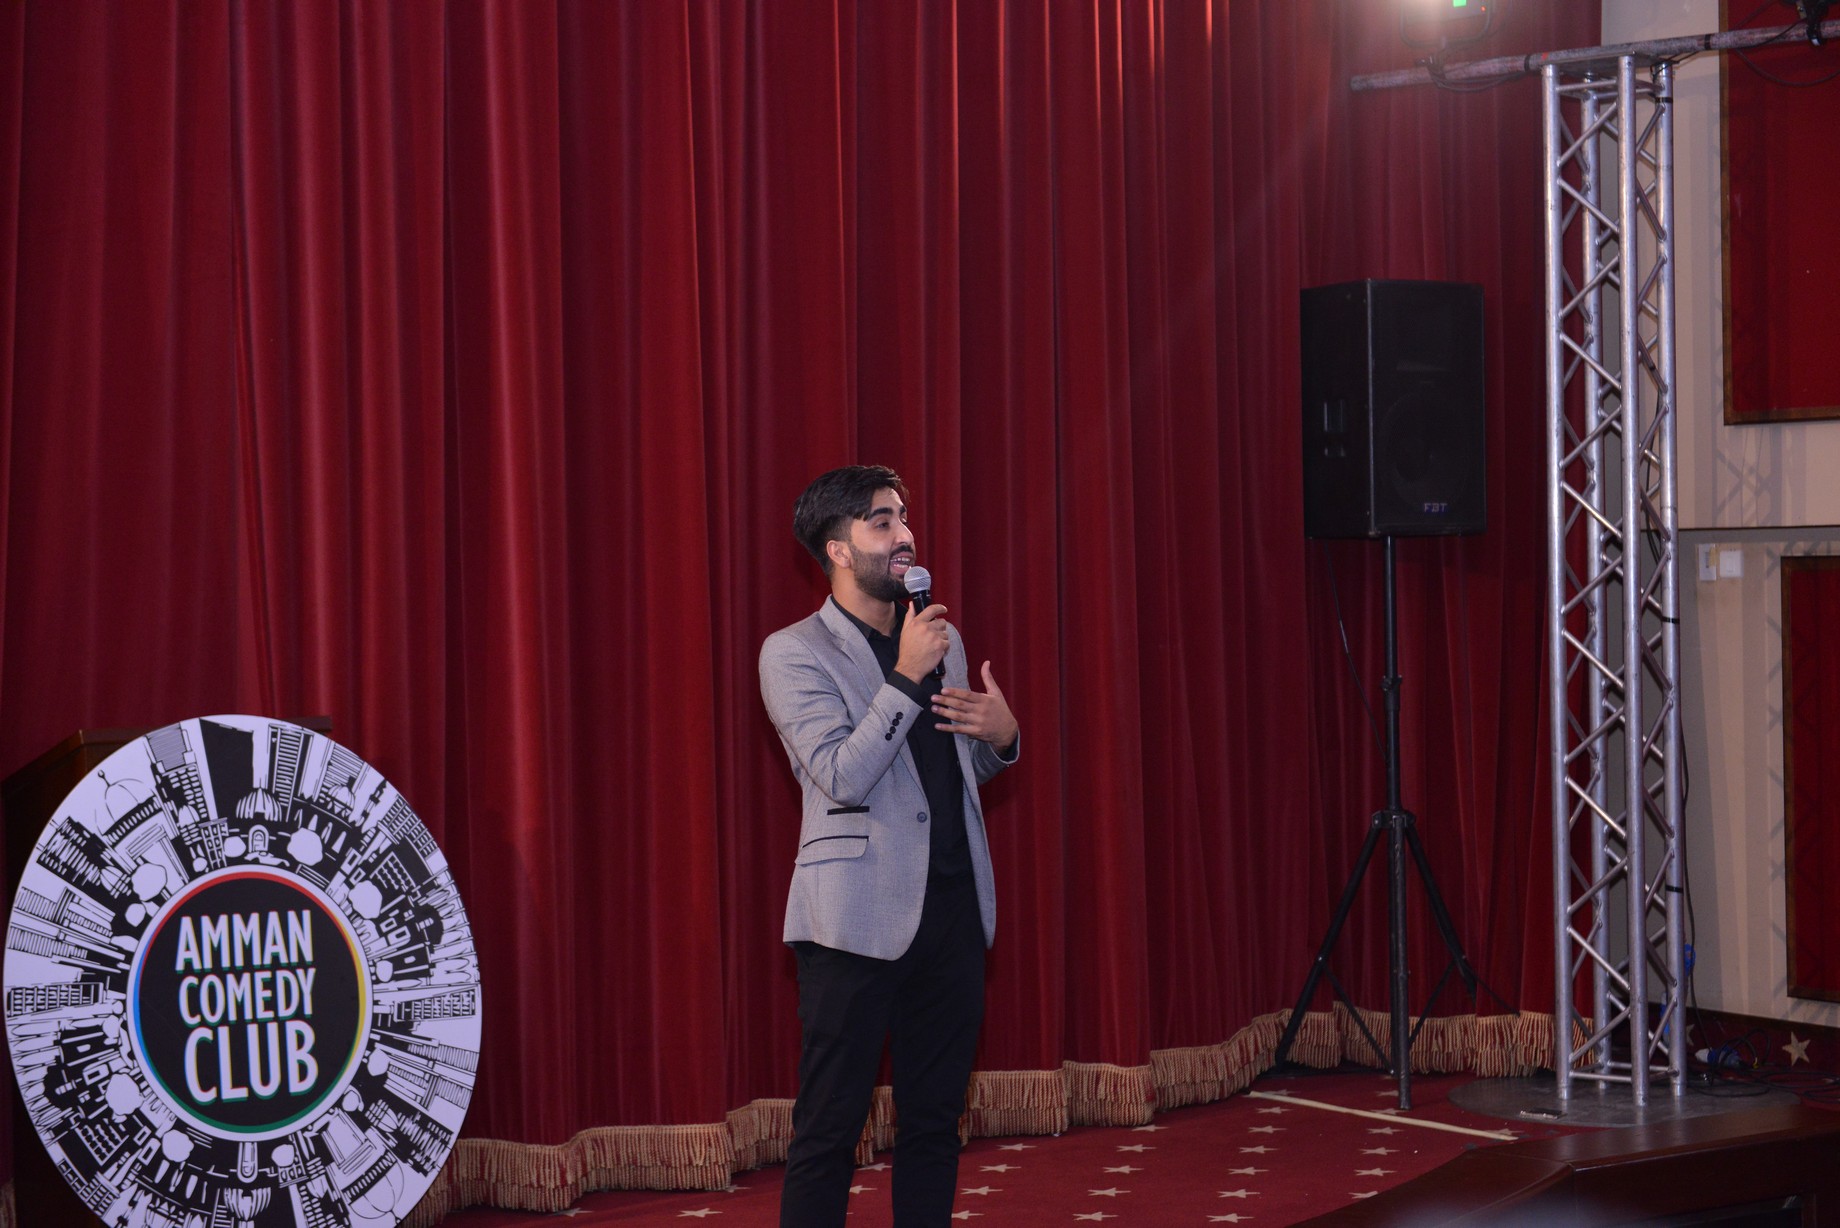 يدعوكم نادي عمان للكوميديا لحضور عرض كوميدي جديد لمجموعة من المواهب الصاعدة.